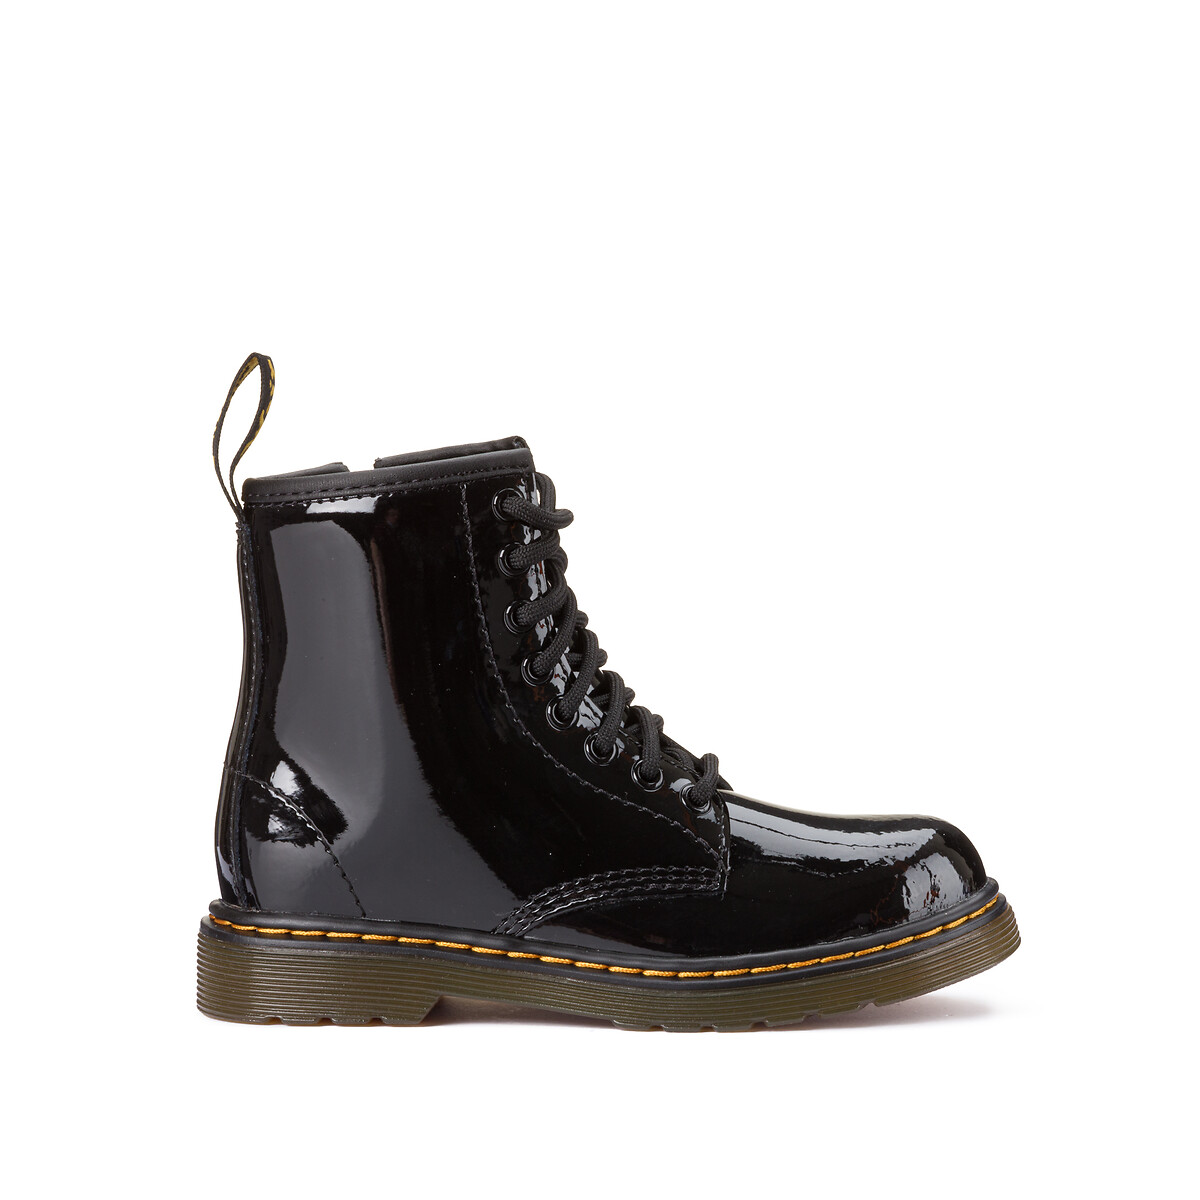 Kids 1460 junior patent leather ankle boots, black, Dr. Martens | La ...